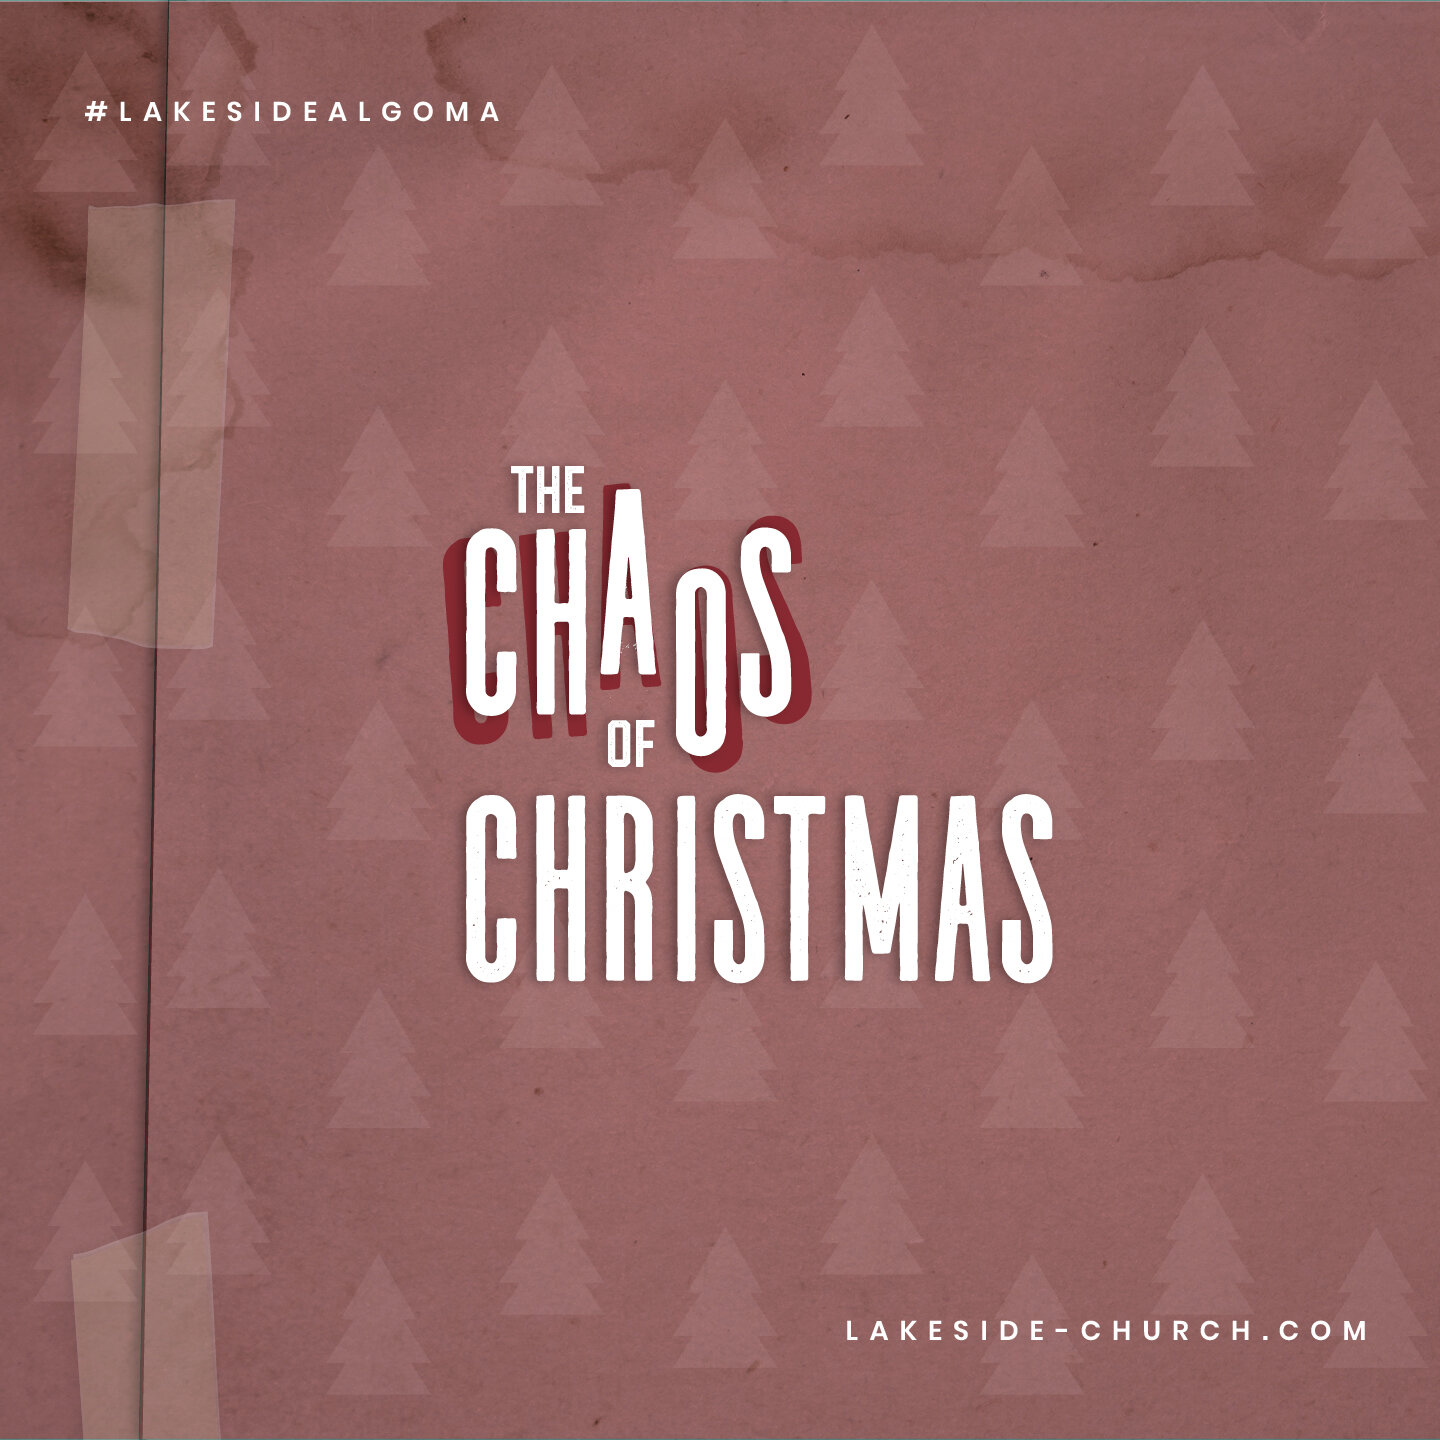 THE CHAOS OF CHRISTMAS